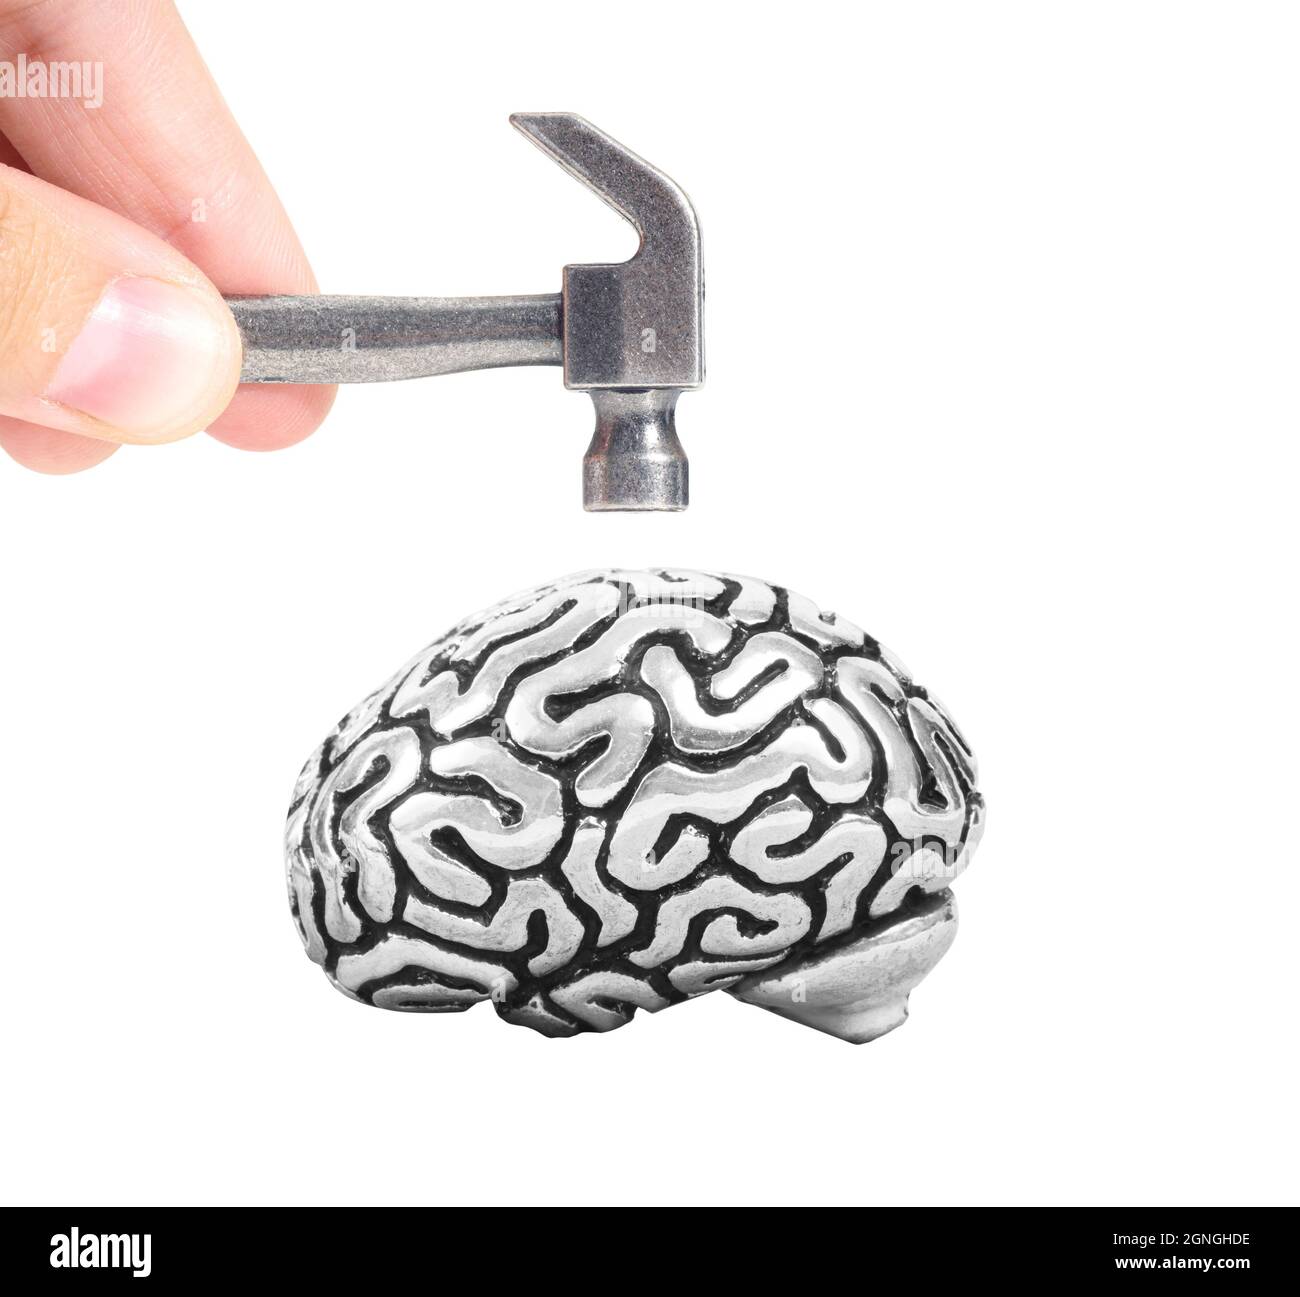 Vista del raccolto delle dita maschio che tengono un martello di acciaio piccolo sopra una copia di metallo di un cervello umano isolato su bianco. Concetto di esame neurologico. Foto Stock